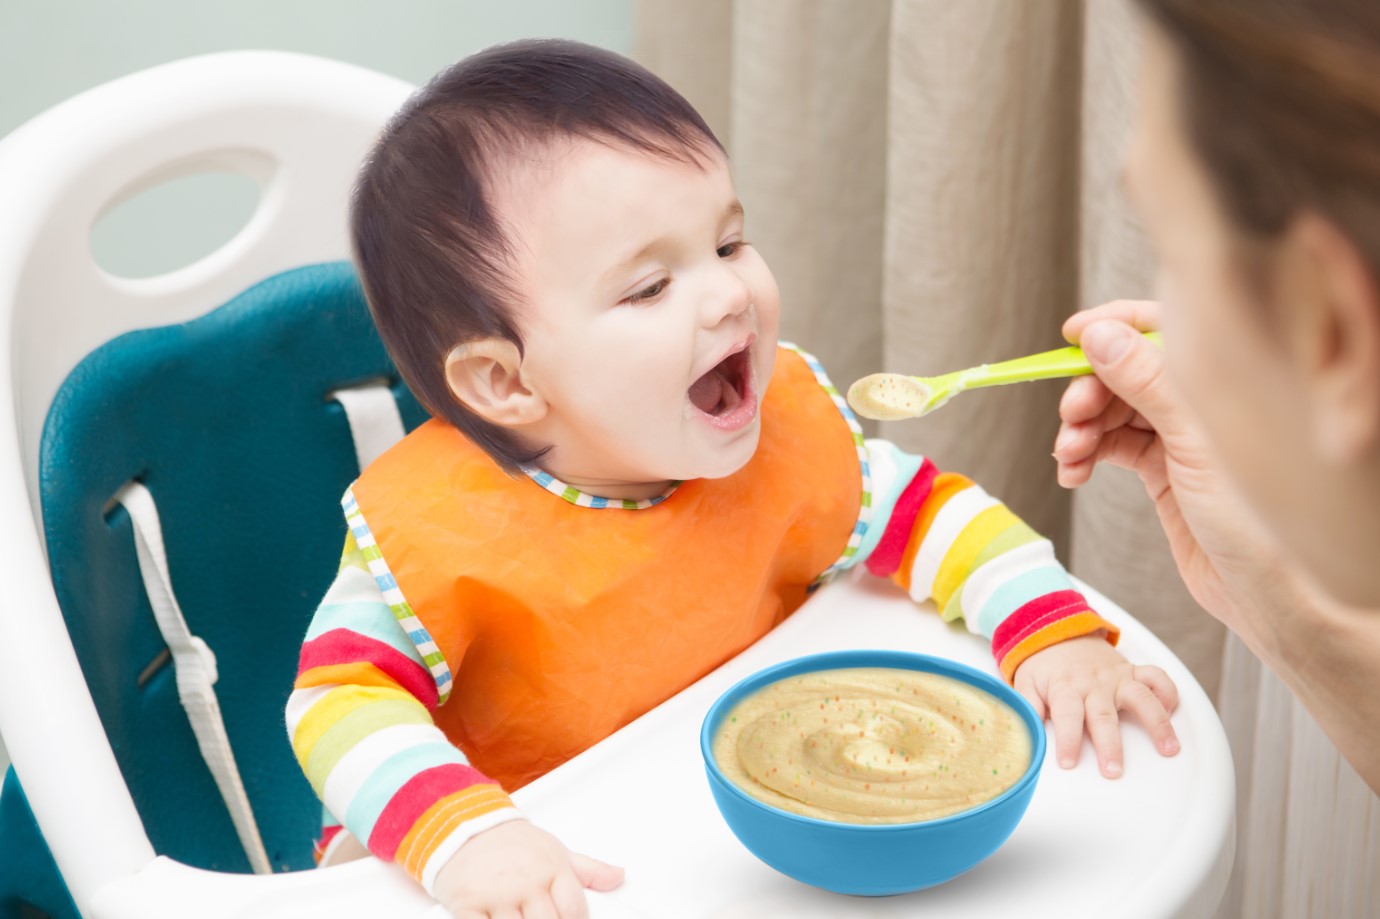 Chế độ ăn cho trẻ không thể thiếu chất đạm